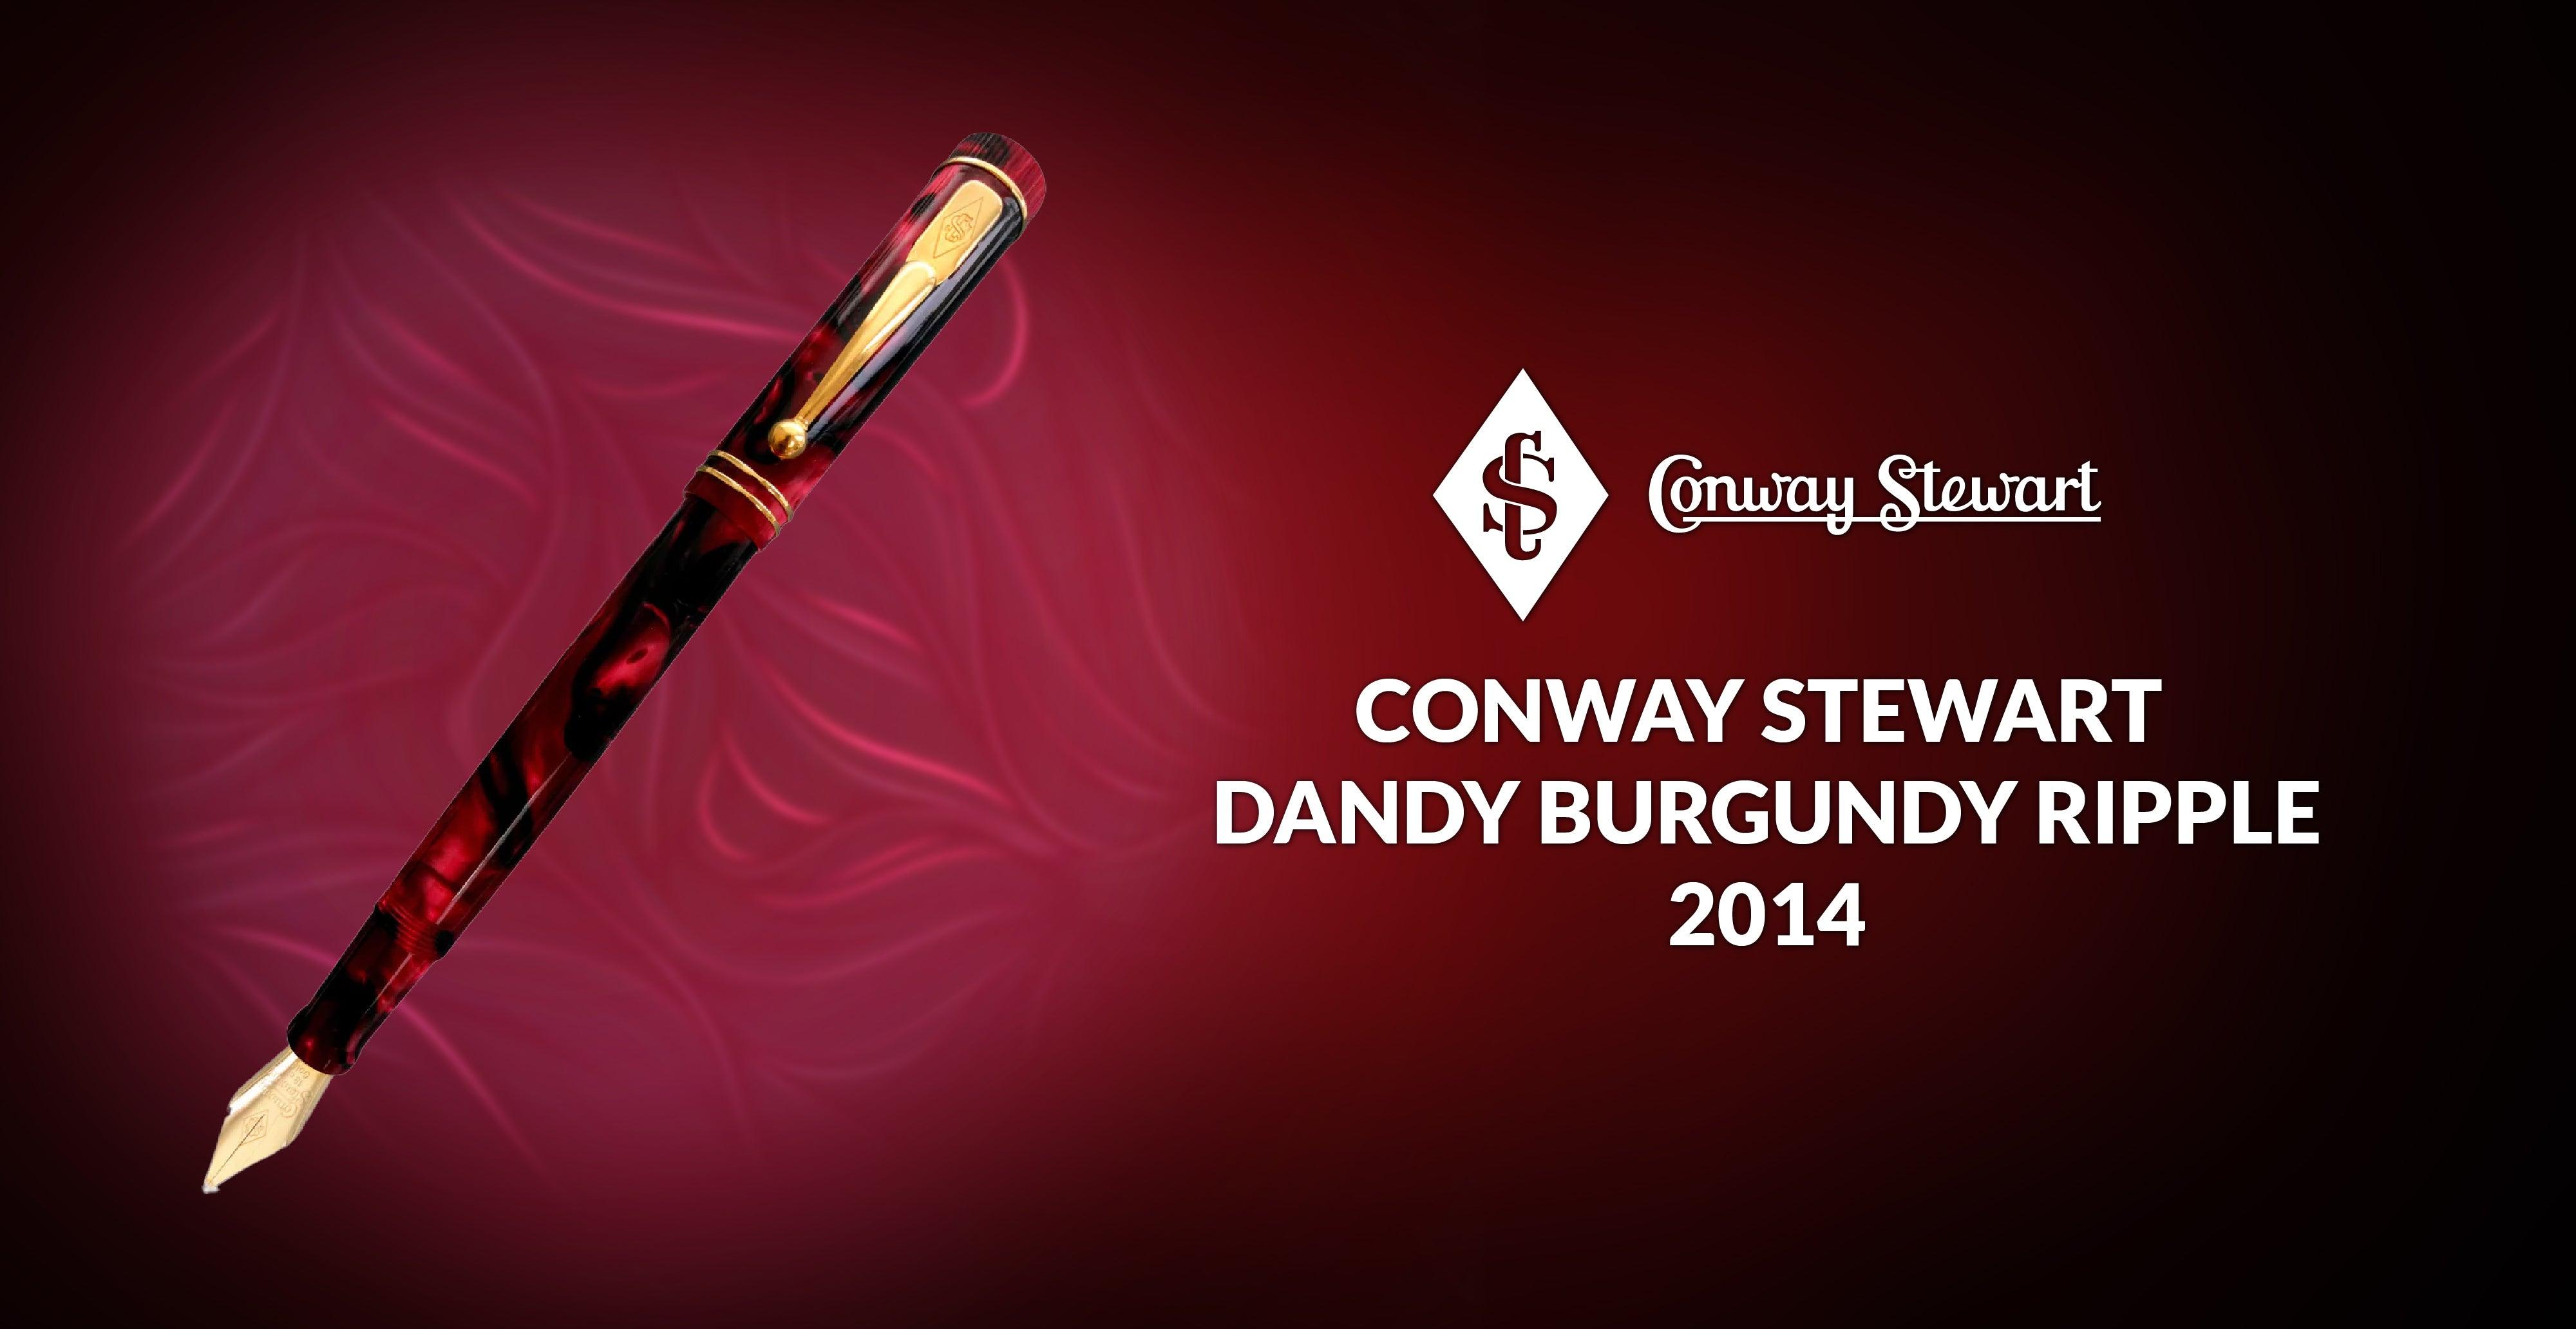 Conway Stewart Dandy Burgundy Ripple, 2014 - Conway Stewart